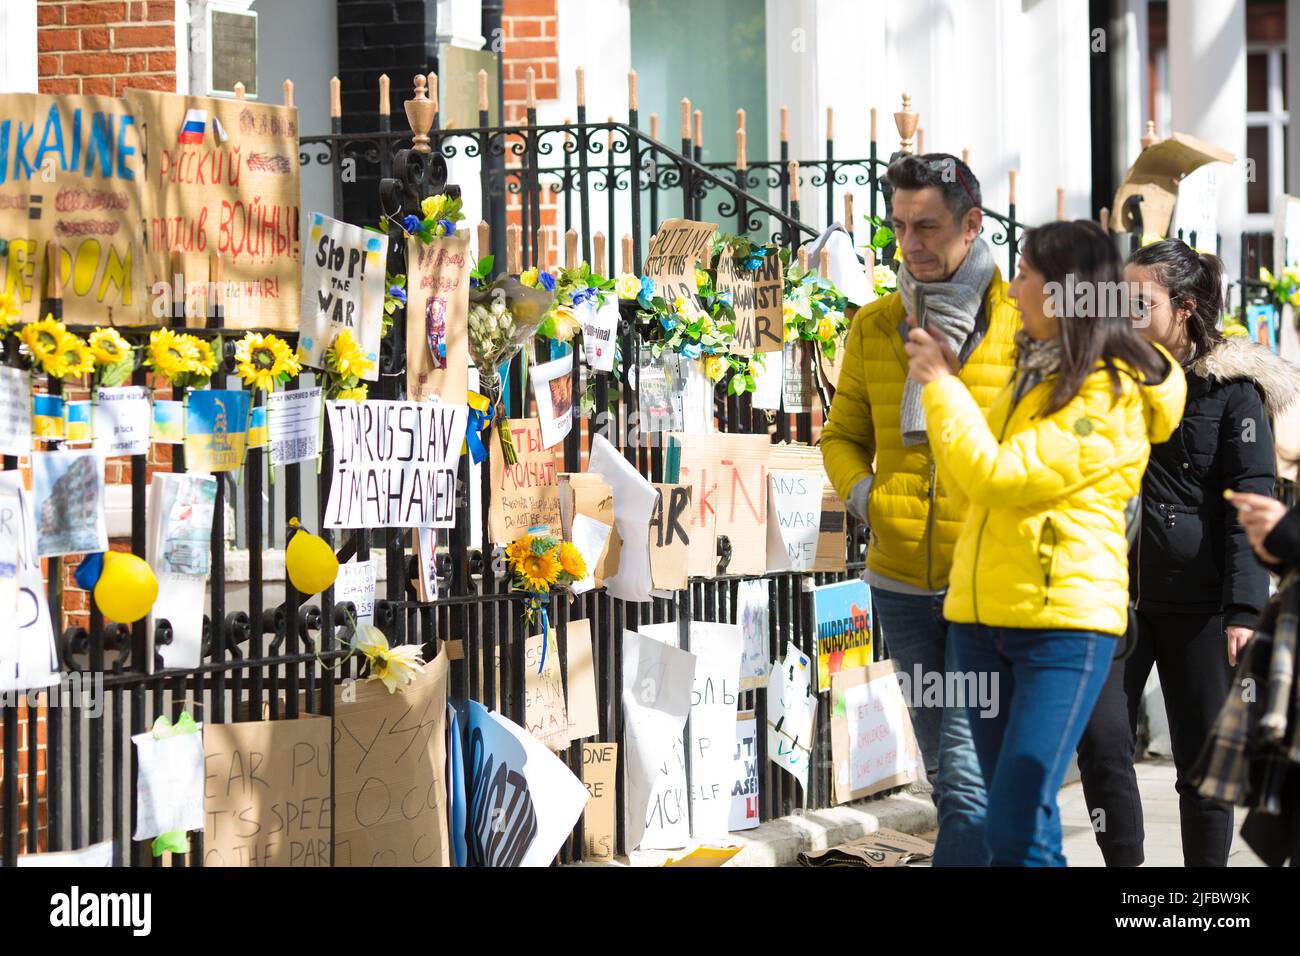 Des messages et des affiches contre l’invasion de l’Ukraine par la Russie sont laissés près de l’ambassade de Russie à Londres. Banque D'Images